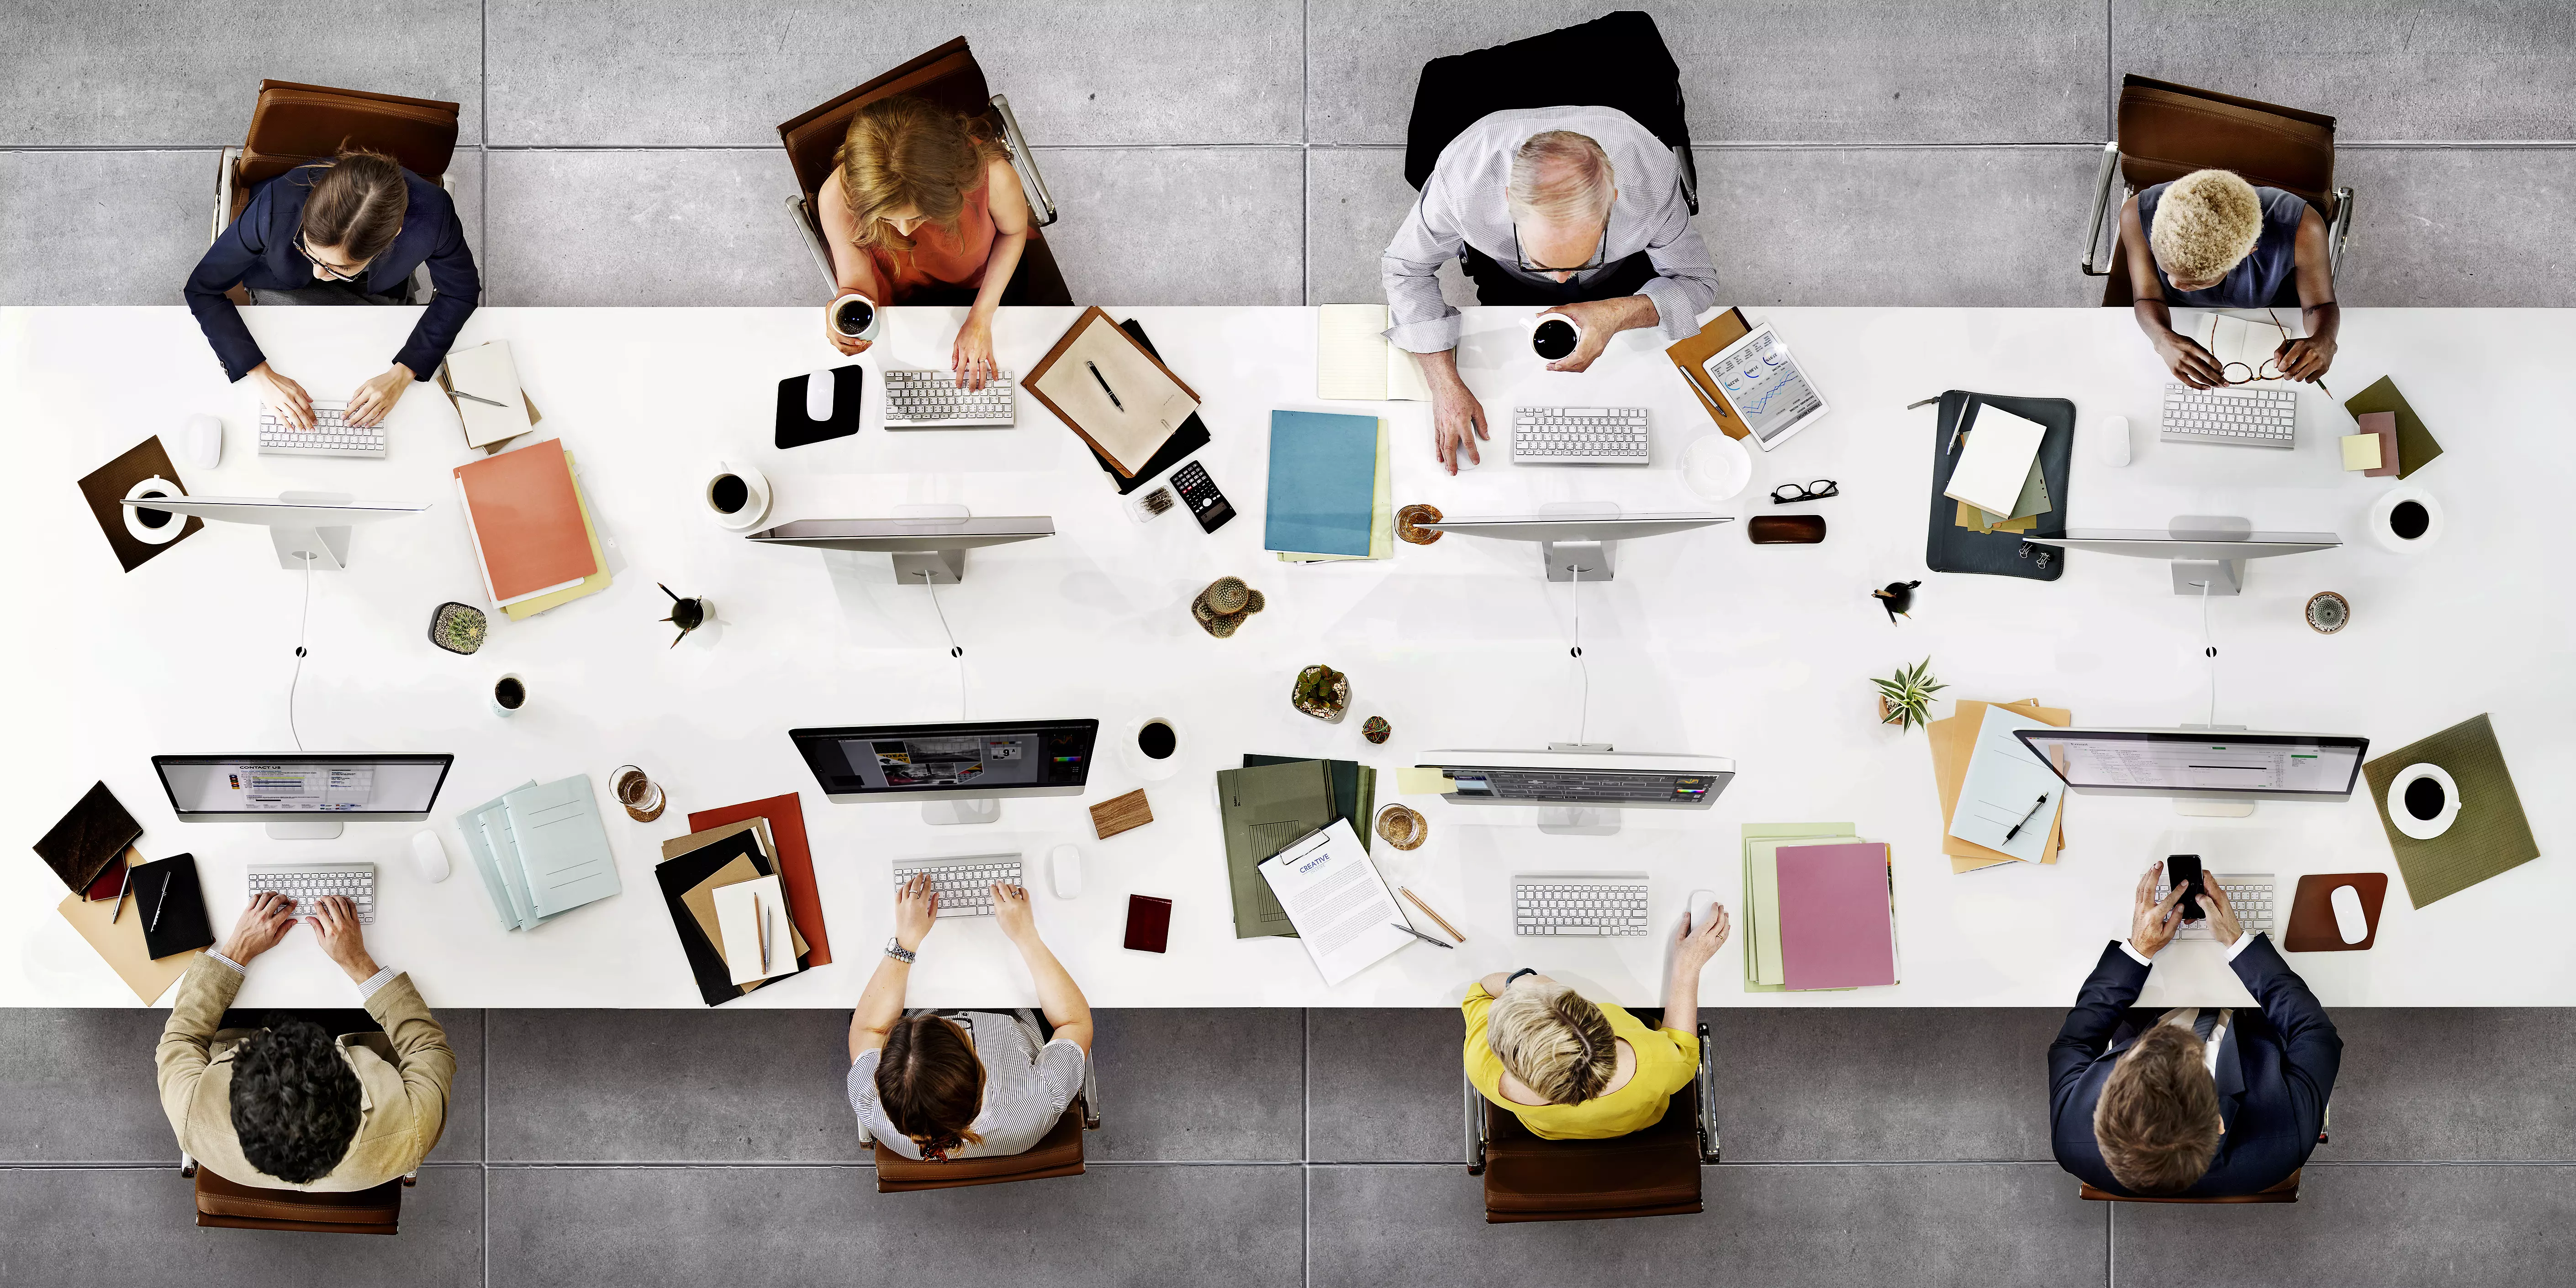 Fotografia przedstawiająca od góry stół wokół którego pracuje 8 osób. Na stole monitory, klawiatury, dokumenty, filiżanki.